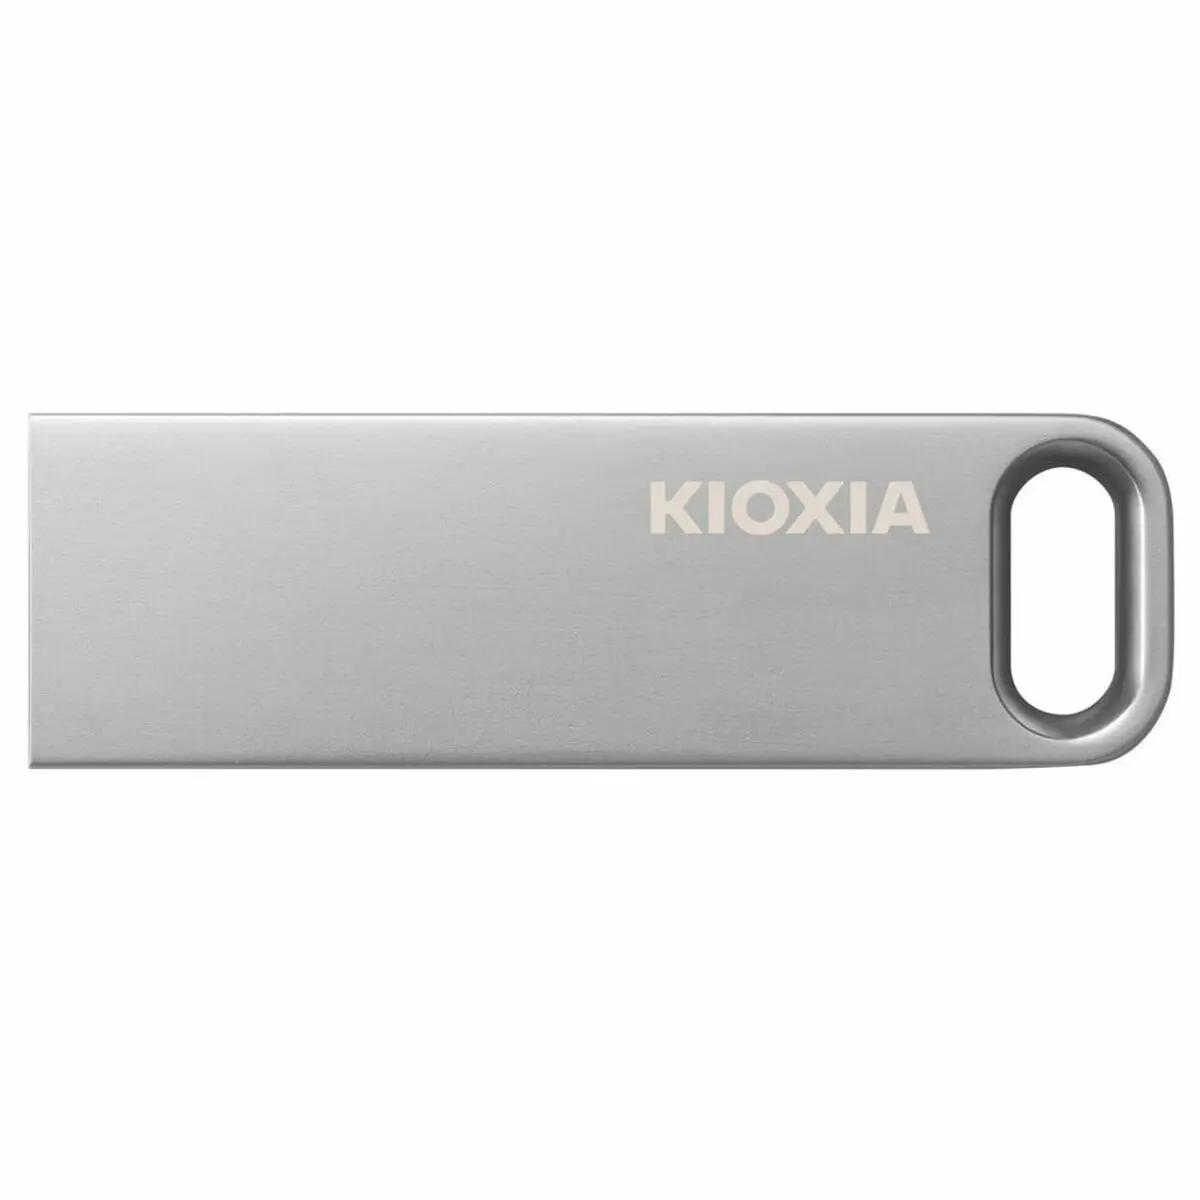 Memoria USB Kioxia LU366S016GG4 Grigio Metallo 16 GB